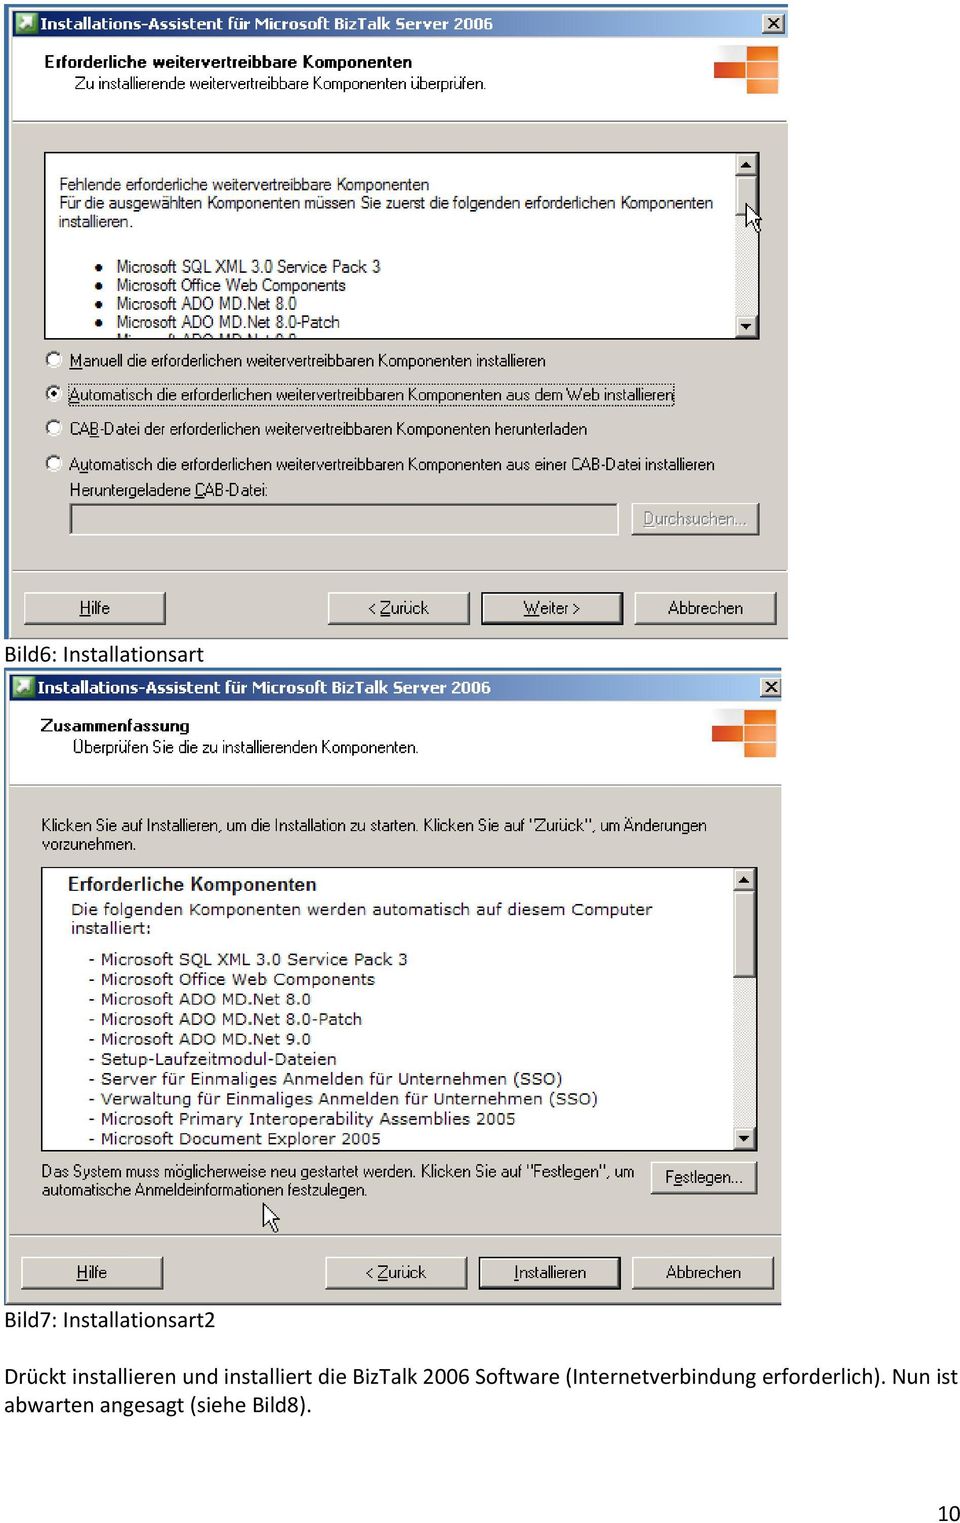 installiert die BizTalk 2006 Software